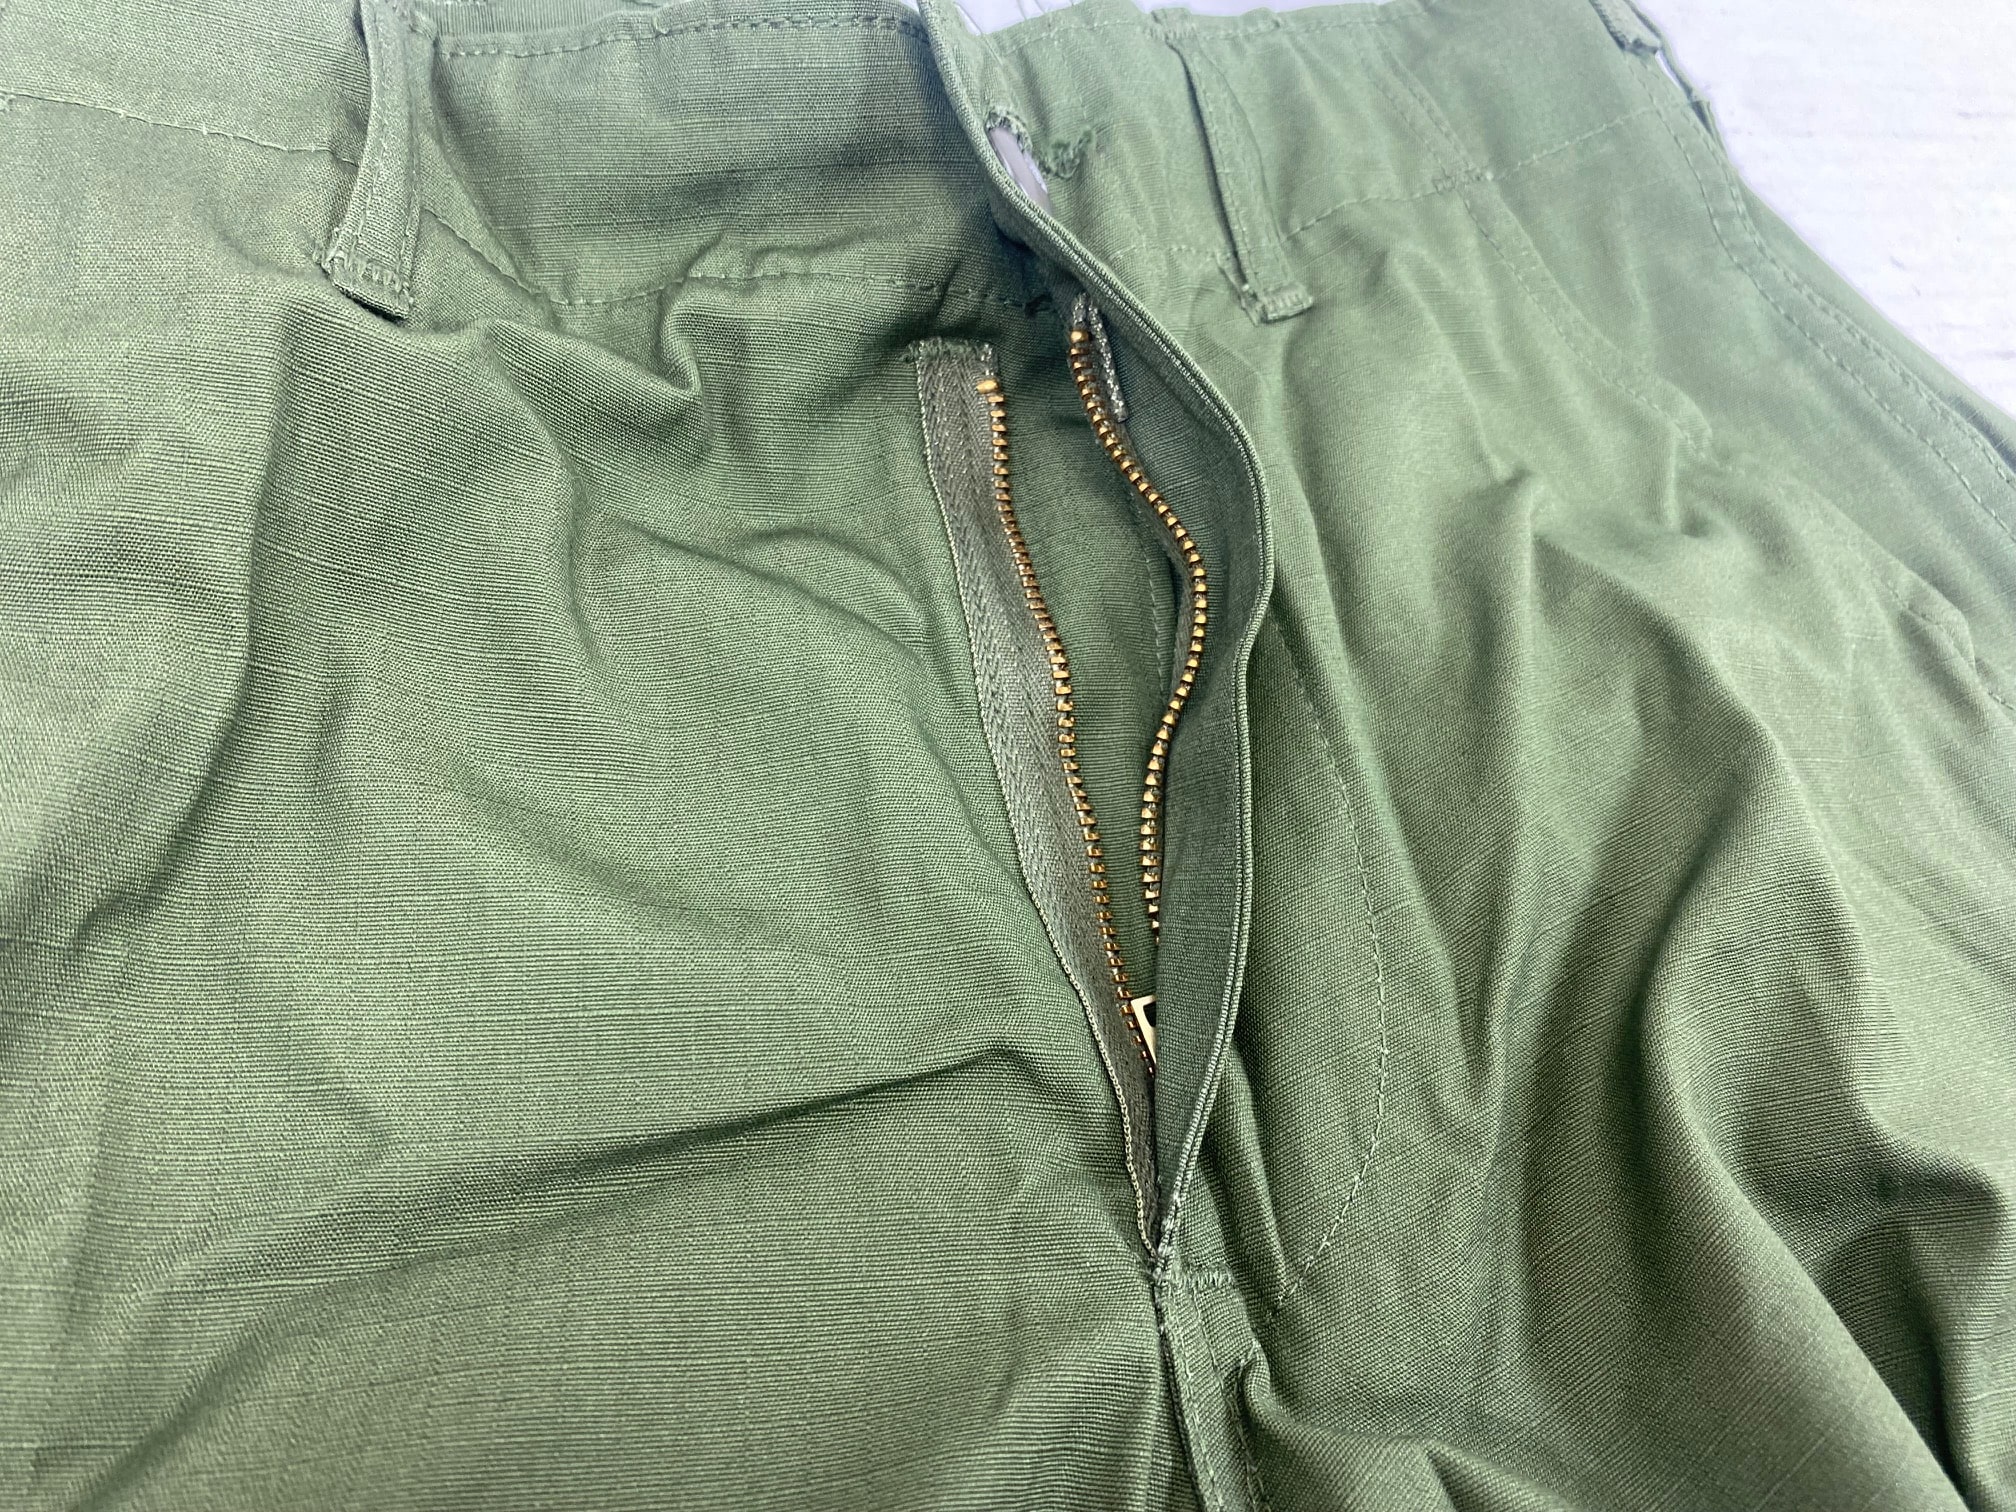 Vietnam Jungle Fatigue Pants, X-Small Short